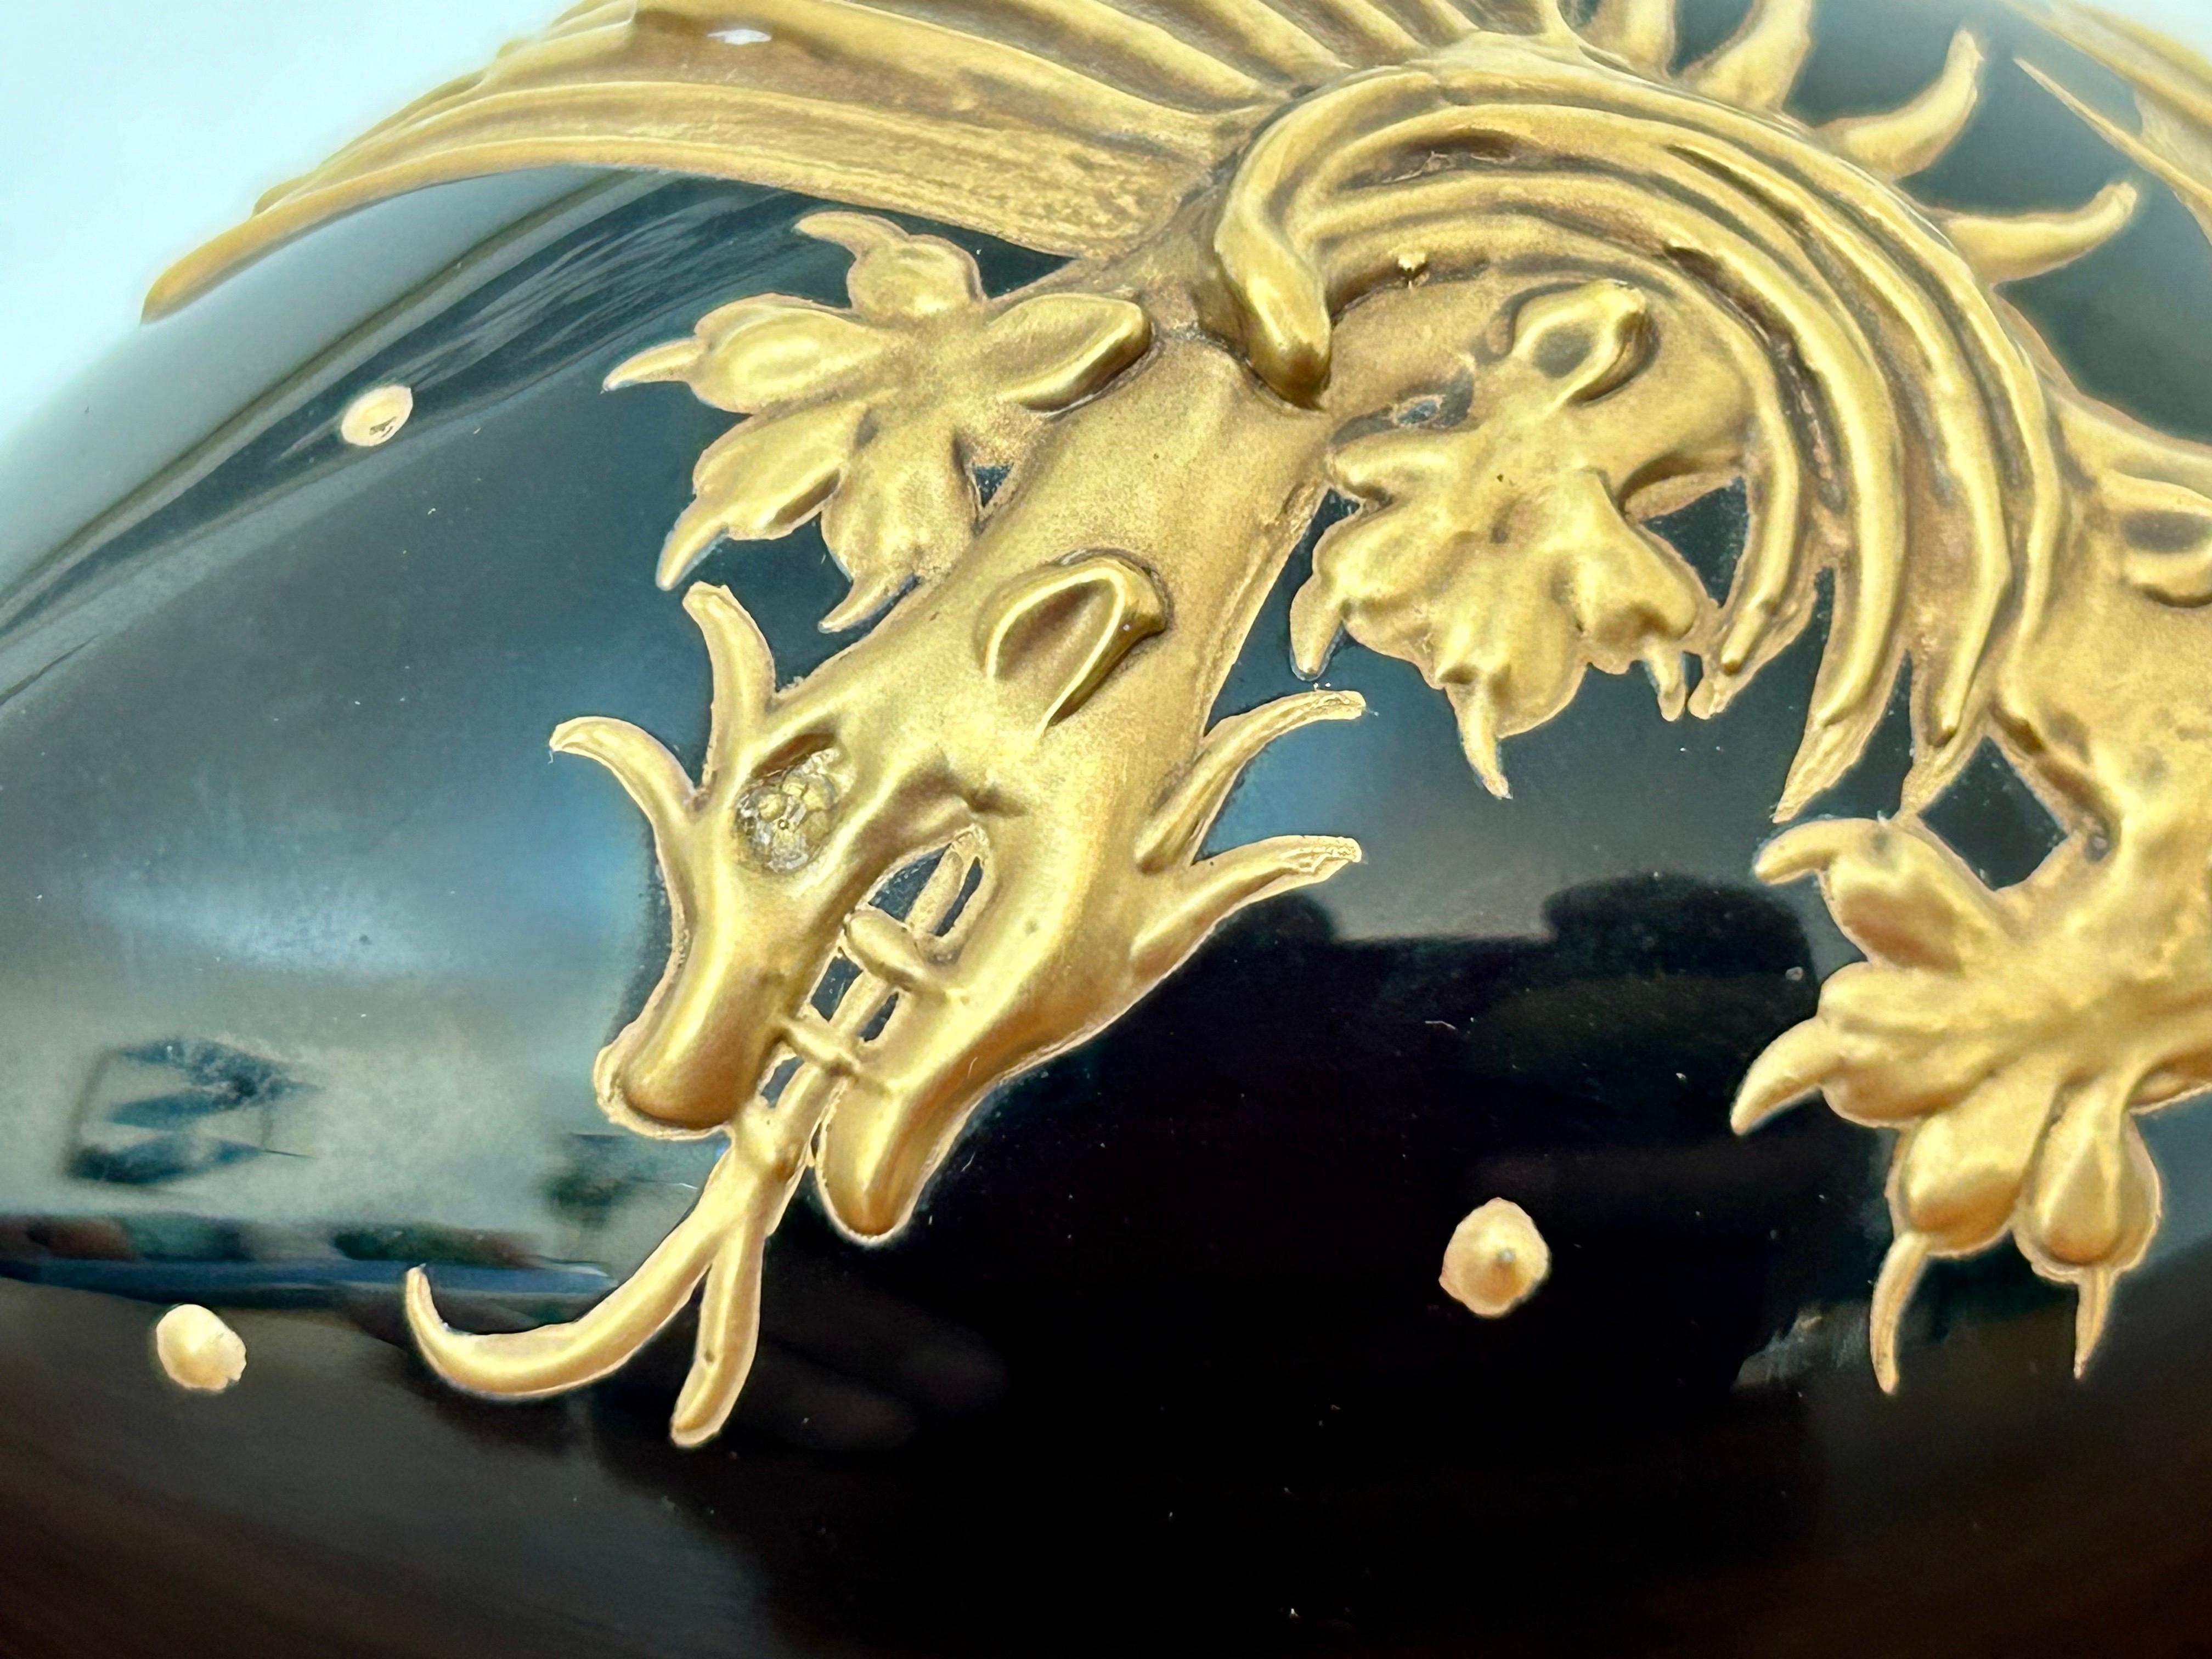 Hübsches Kunstobjekt.
Tiefschwarzes Kristall mit erhabener 24-karätiger Goldvergoldung und Tupfen.
Auf der Unterseite eingraviert 